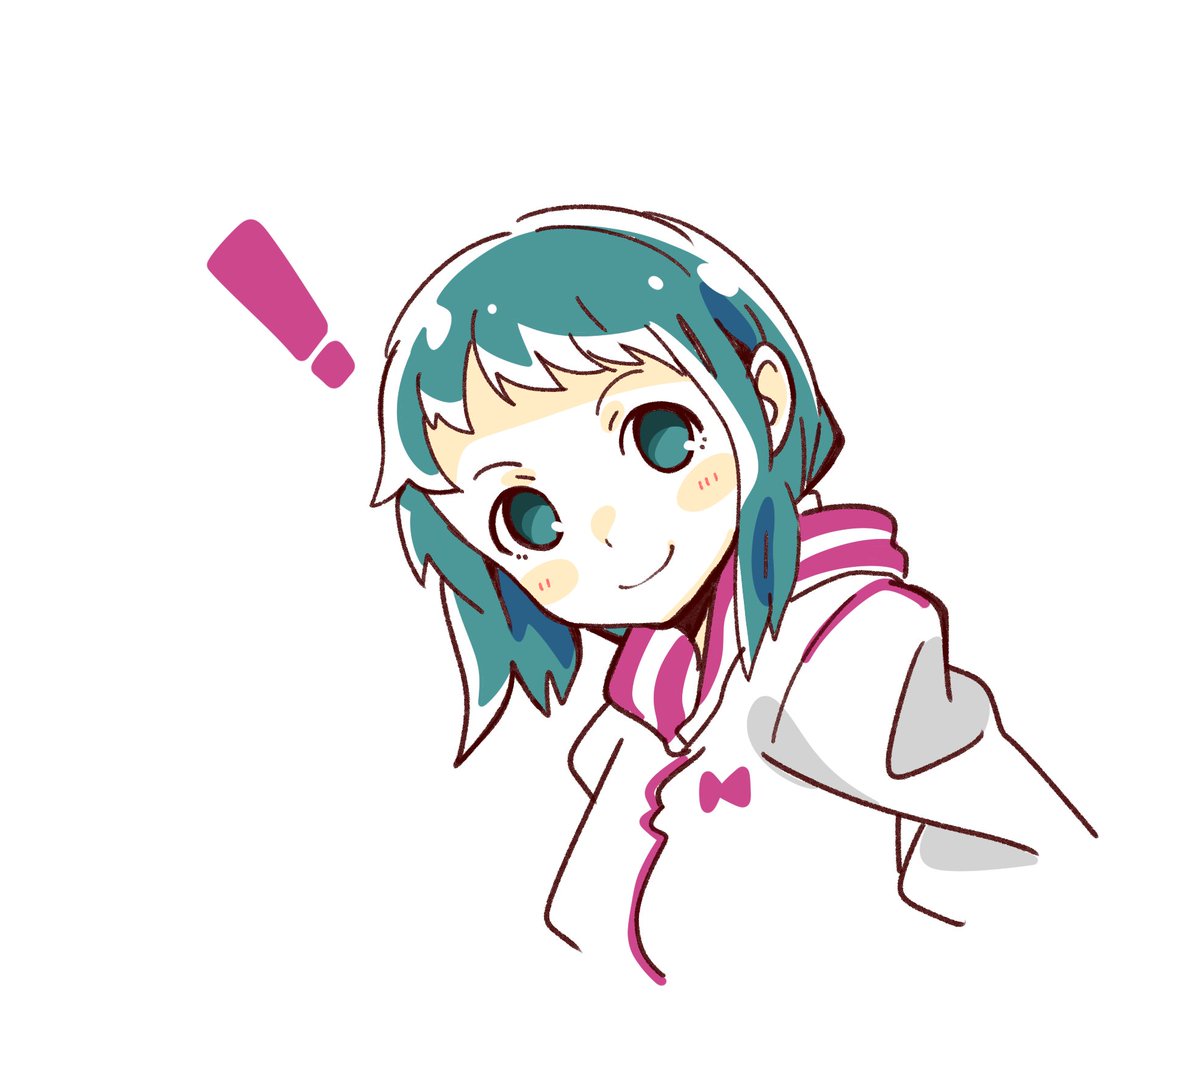 yamagishi fuuka 1girl solo smile ! white background simple background jacket  illustration images